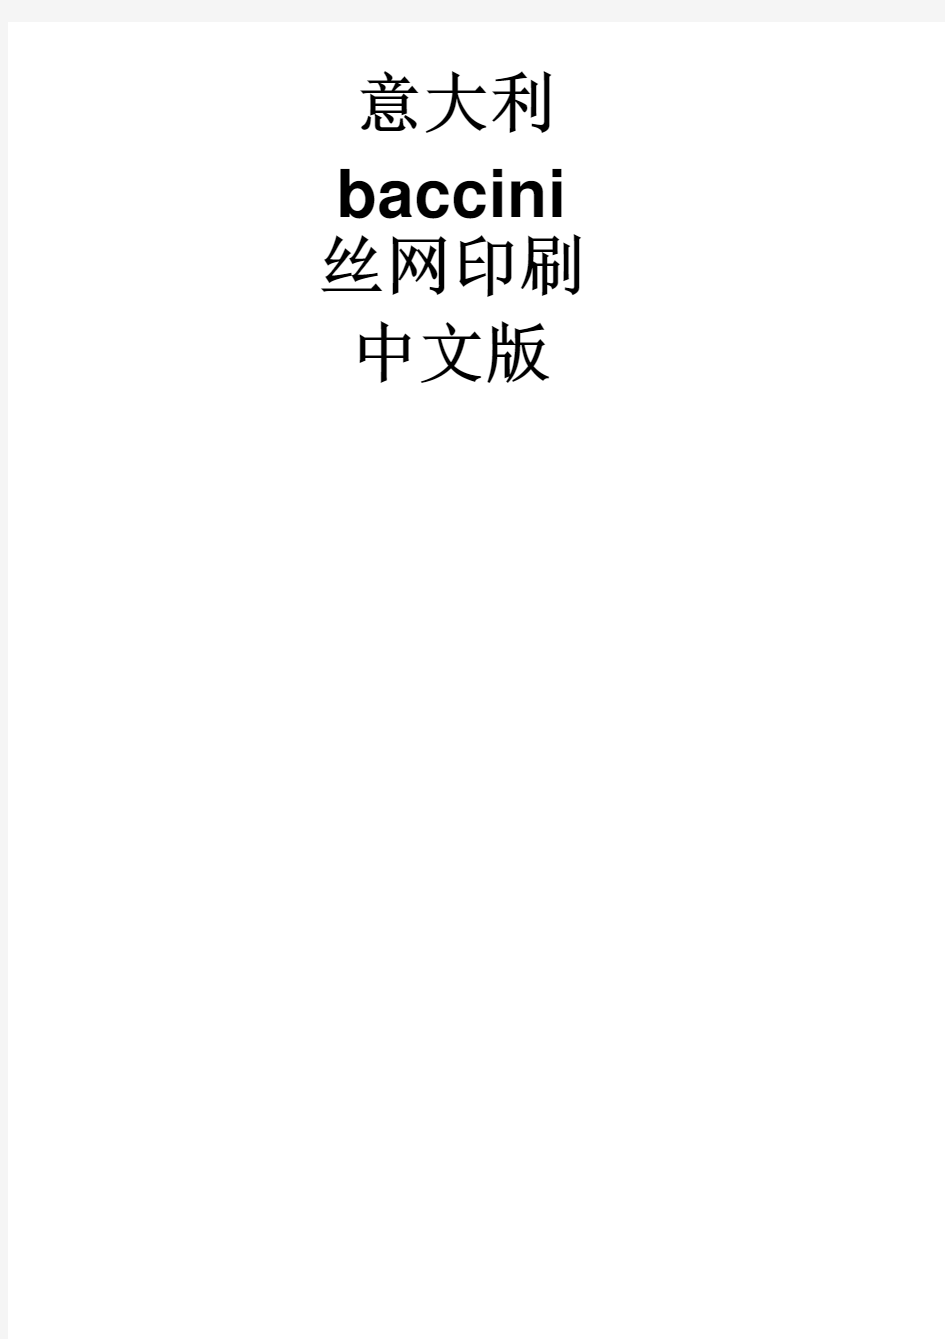 太阳能电池丝网印刷全中文使用说明书